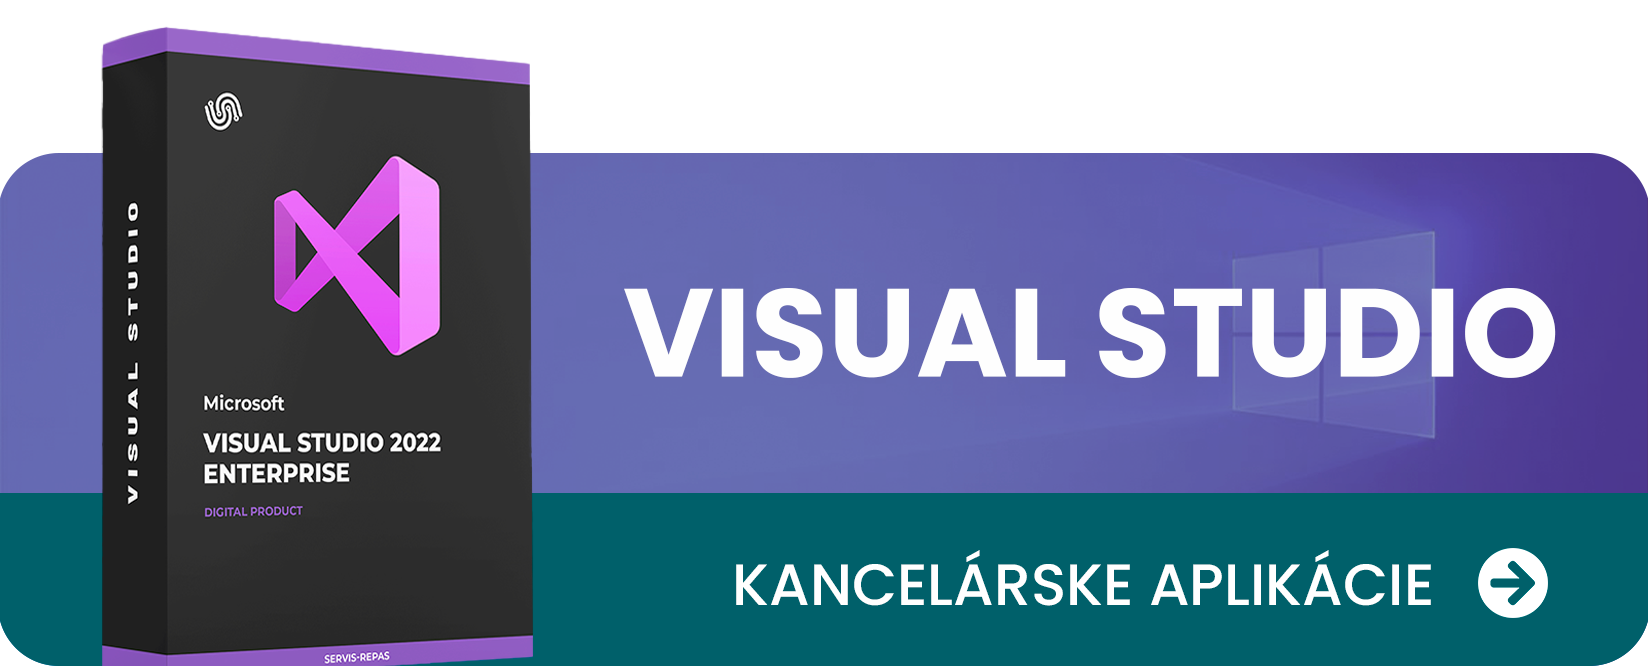 Visual Studio Home Page